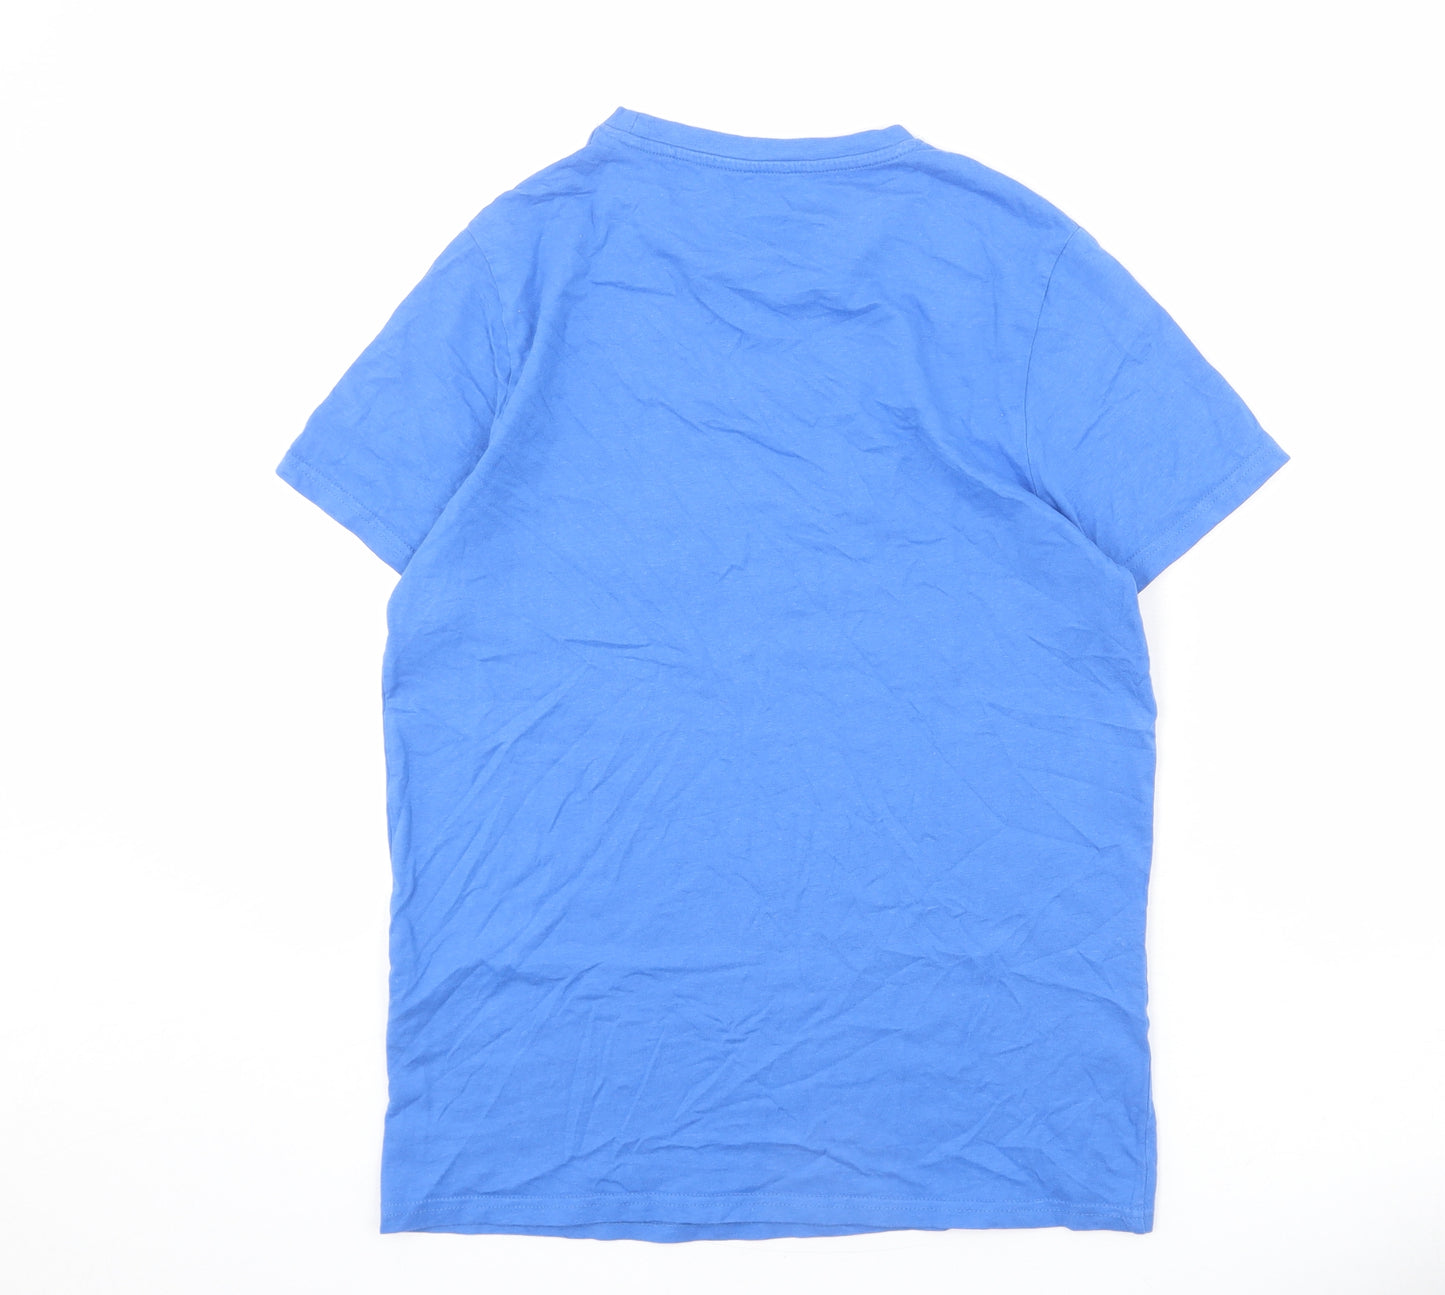 Born Rich Mens Blue Cotton T-Shirt Size S Round Neck